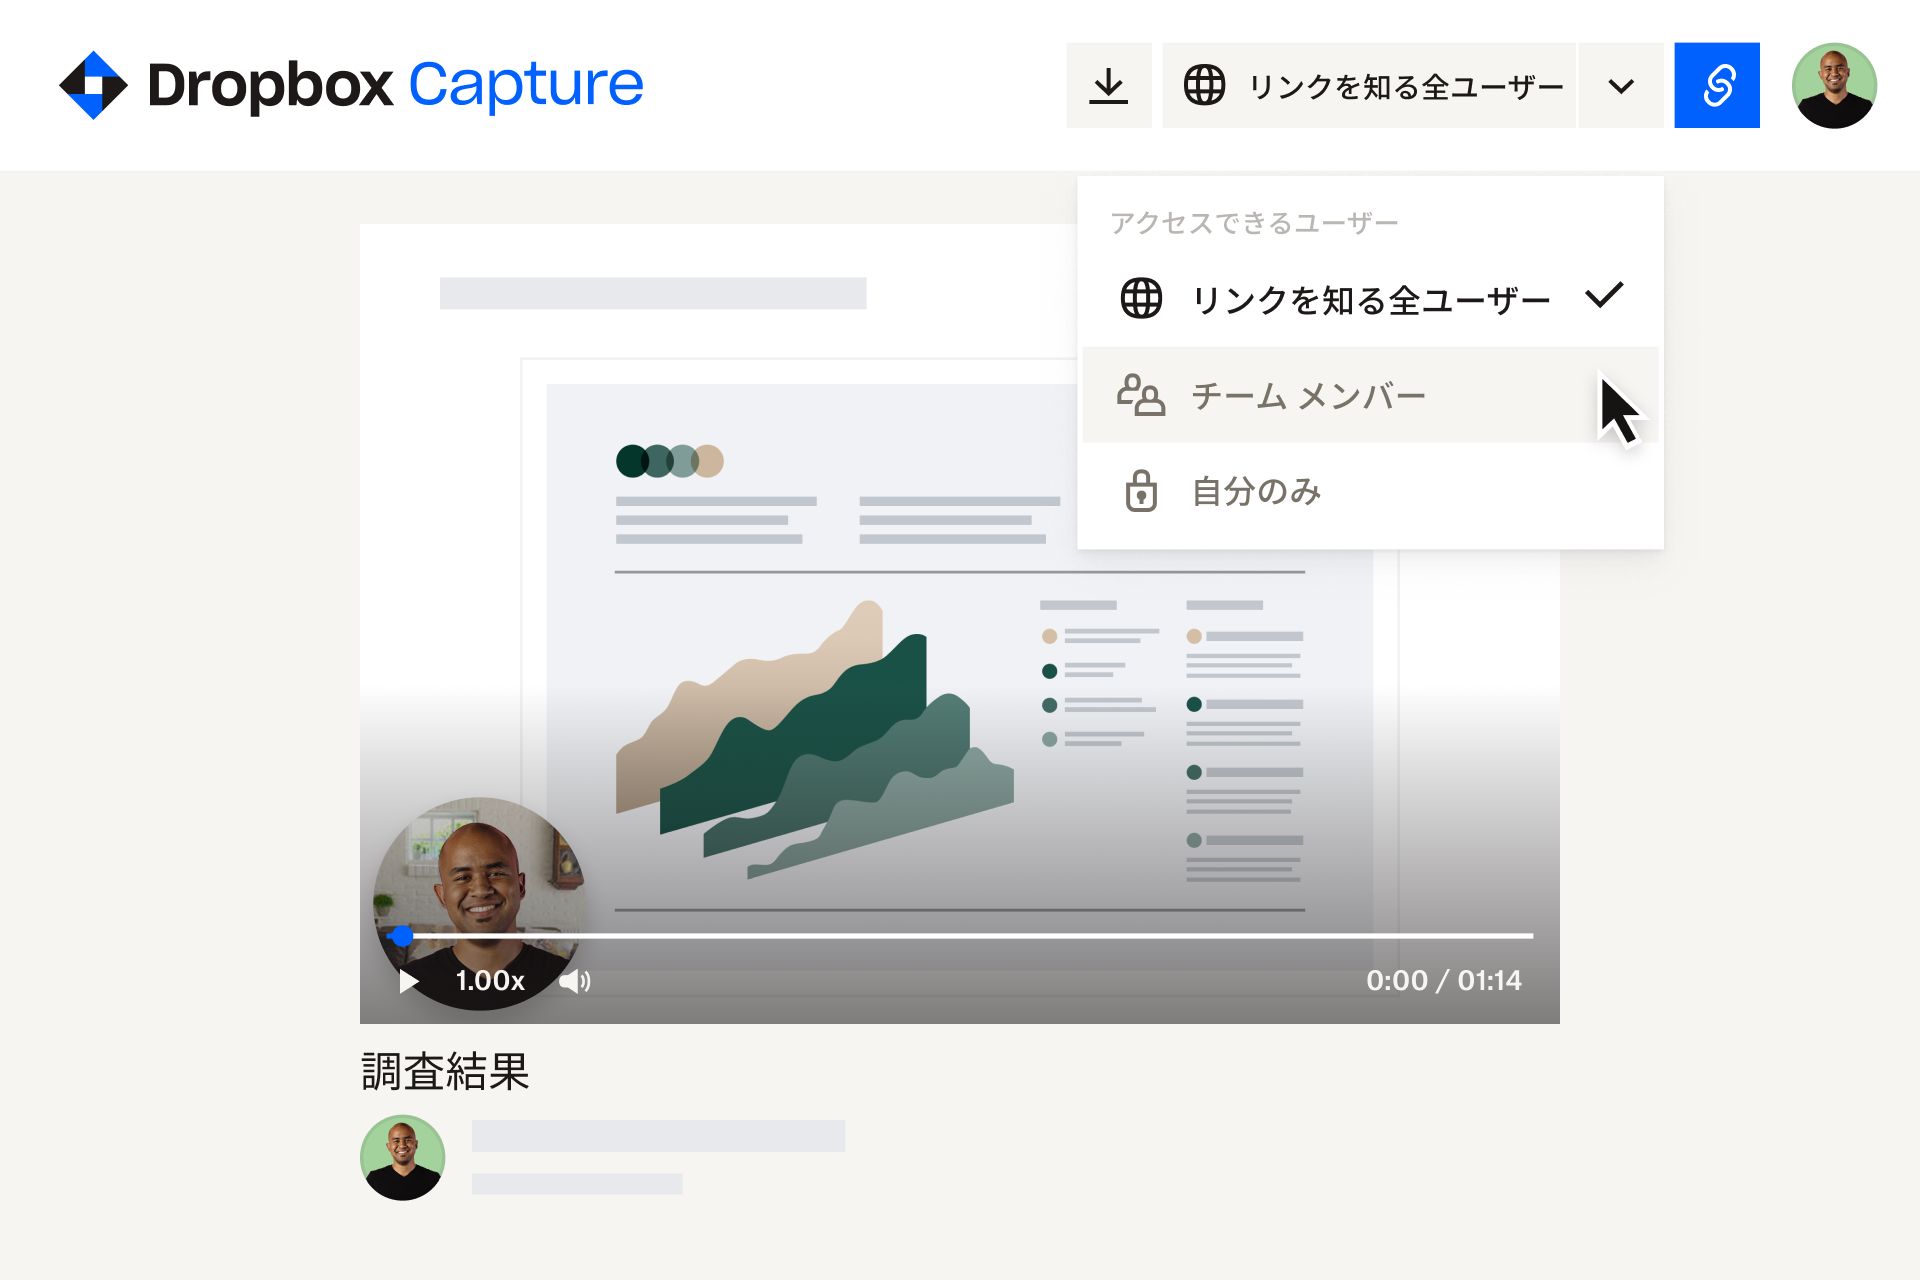 Dropbox Capture の動画で、［アクセスできるユーザー］ドロップダウンの［チーム メンバー］オプションを選択するユーザー